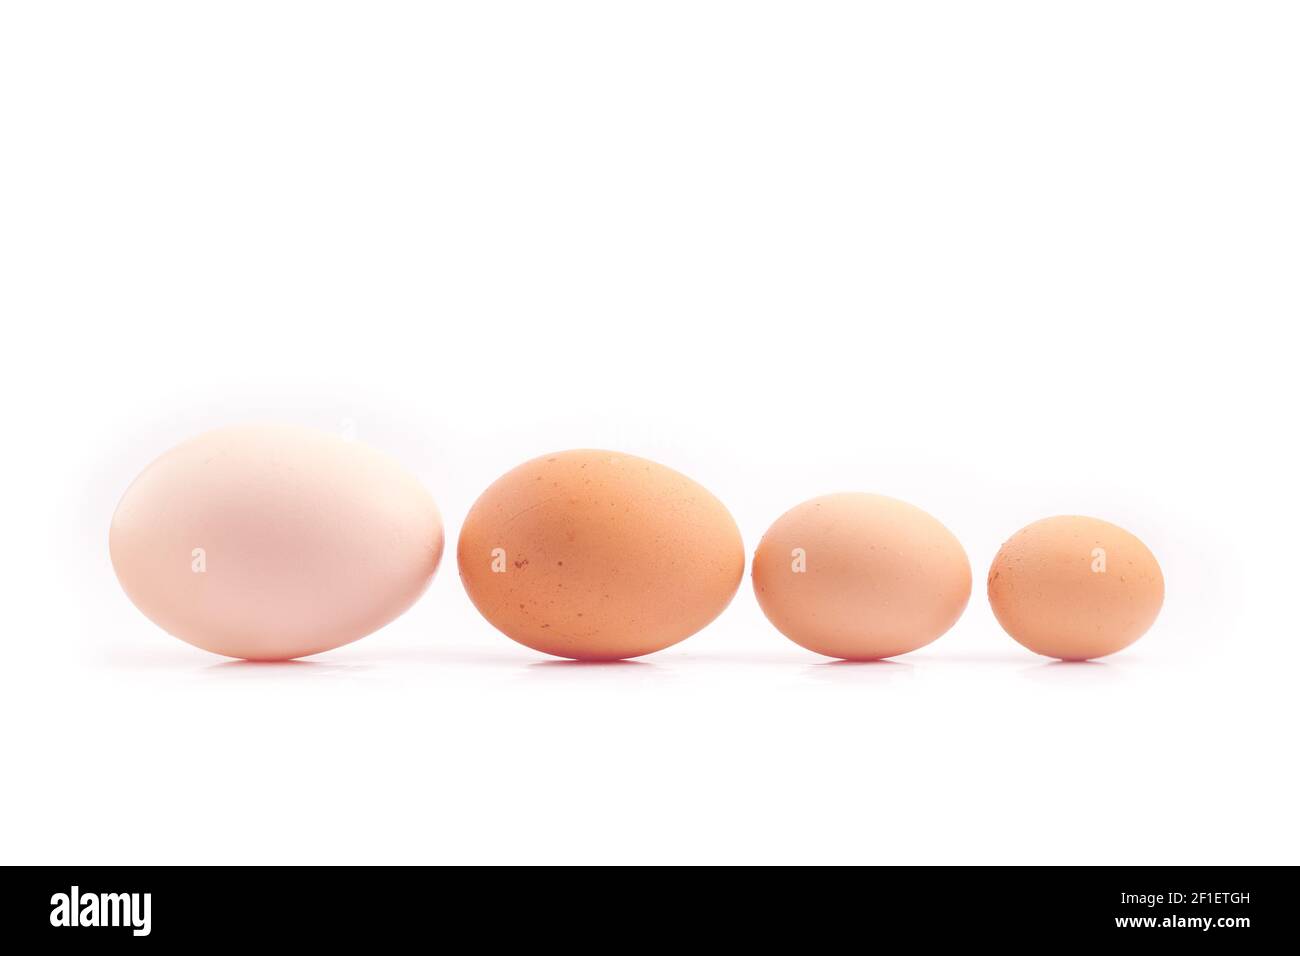 uova - quattro uova di pollo di diverse dimensioni allineate, ordinate per dimensione, isolate su sfondo bianco Foto Stock